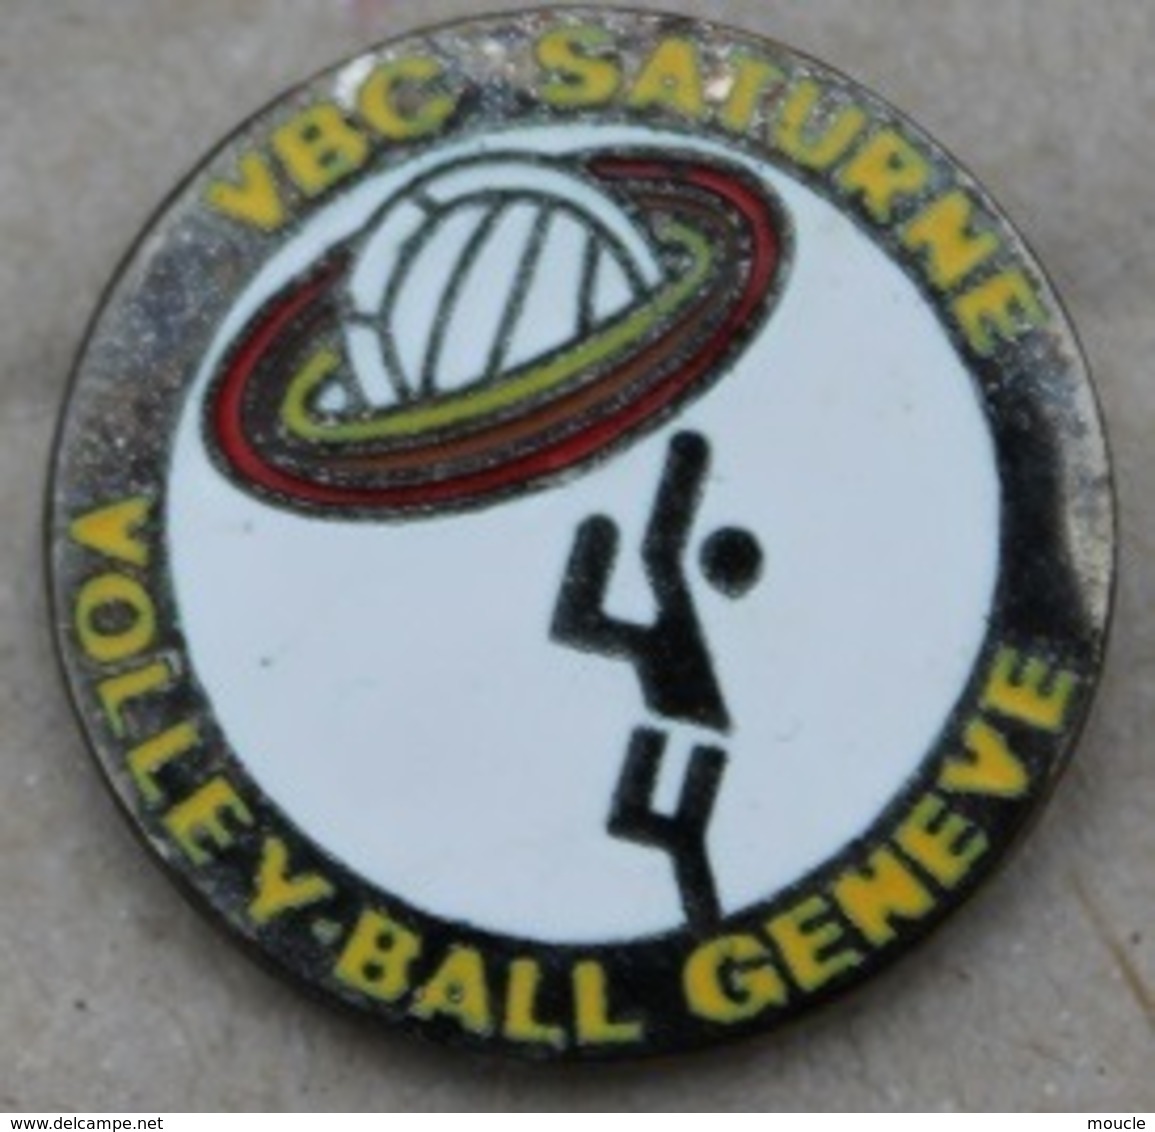 VBC SATURNE  GENEVE  - SUISSE - BALLON - VOLLEYBALL - VOLLEY BALL -              (20) - Voleibol